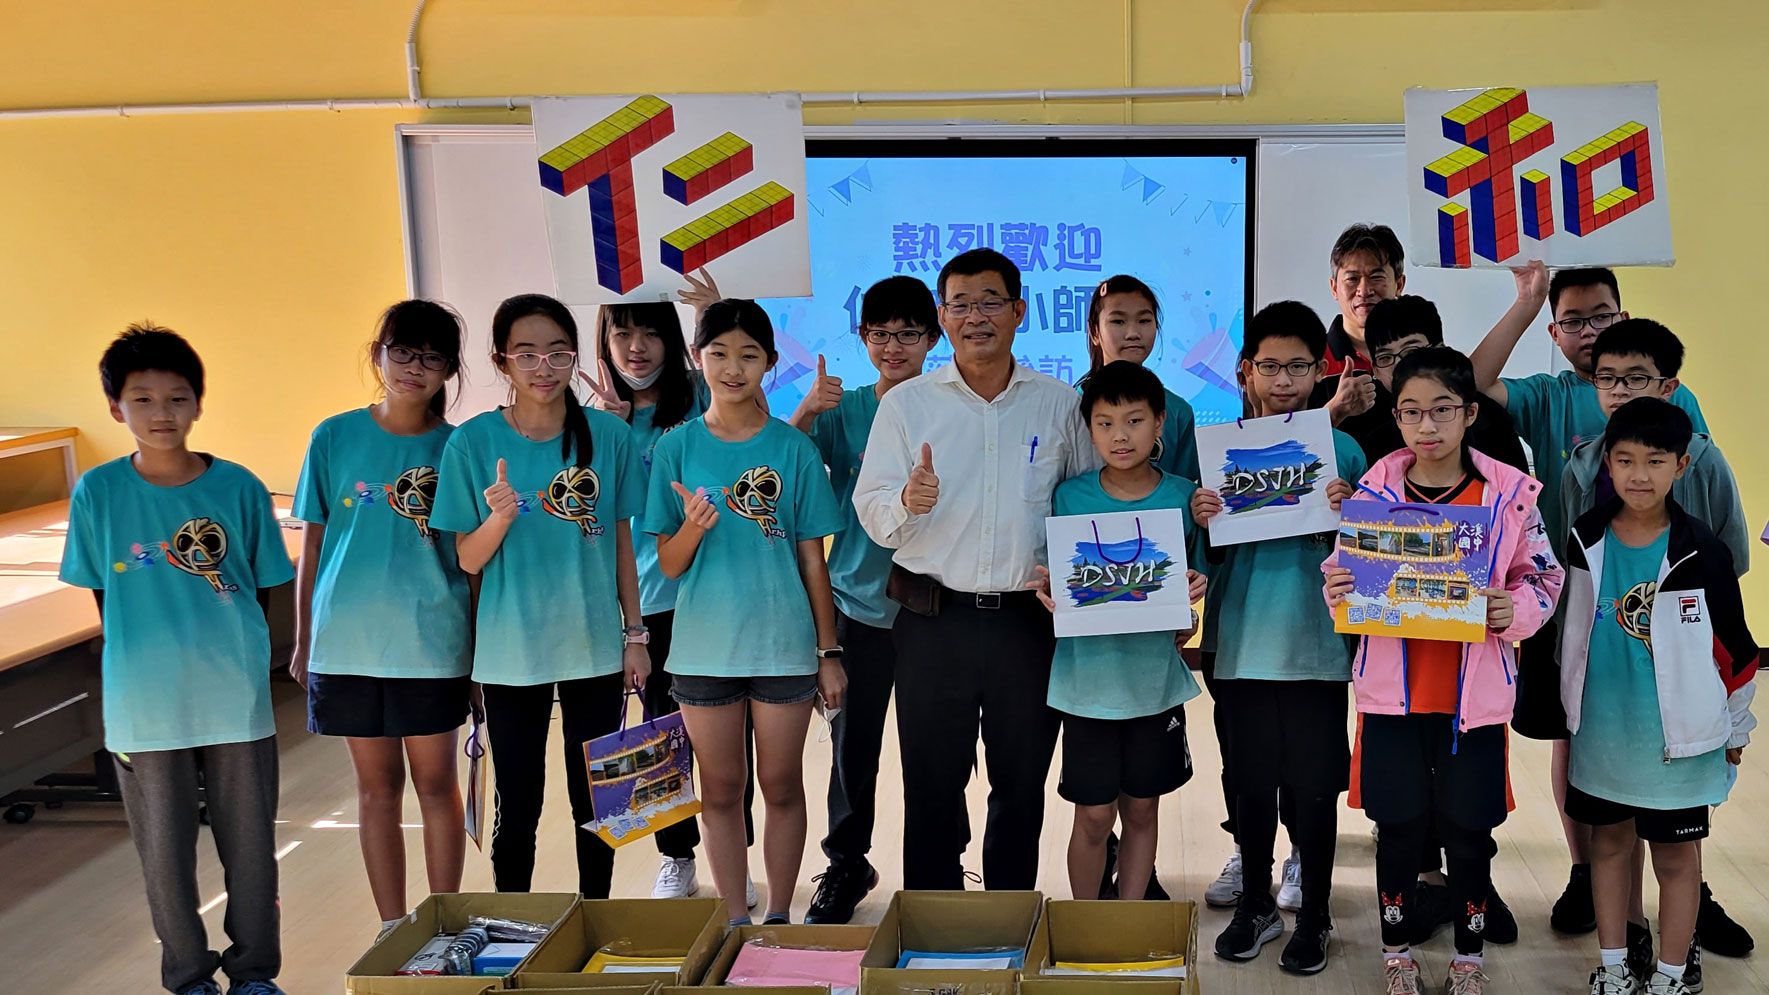 蕭富陽校長帶領學生參加自造中心機器人課程的活動。